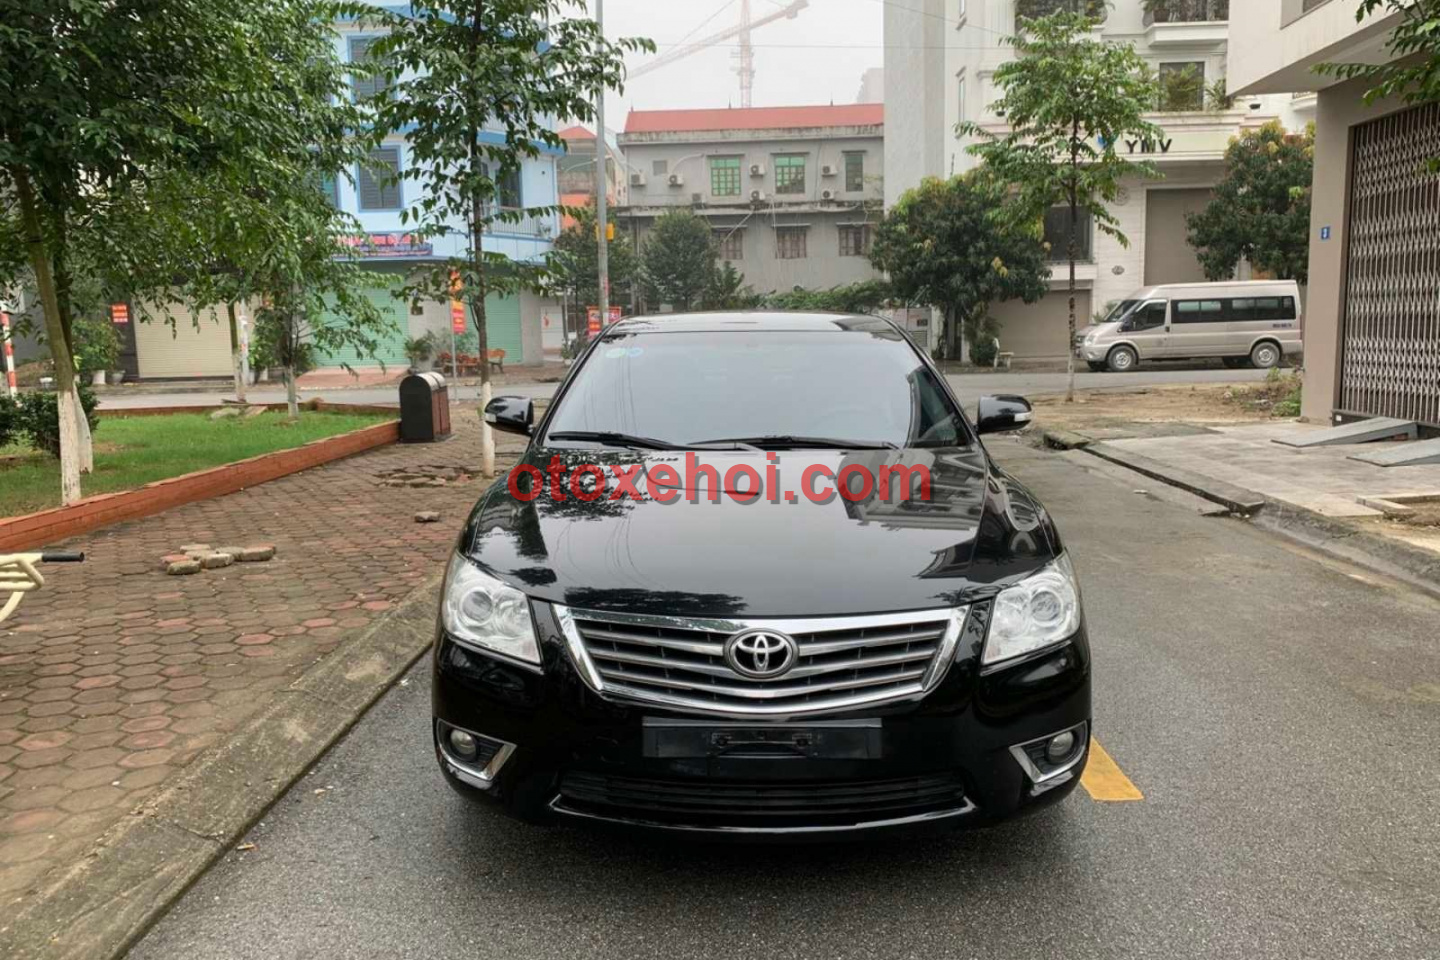 Giá bán xe ô tô Toyota Camry 2.4G Xe cũ Số tự động tại Hà Nội | Mua bán ...